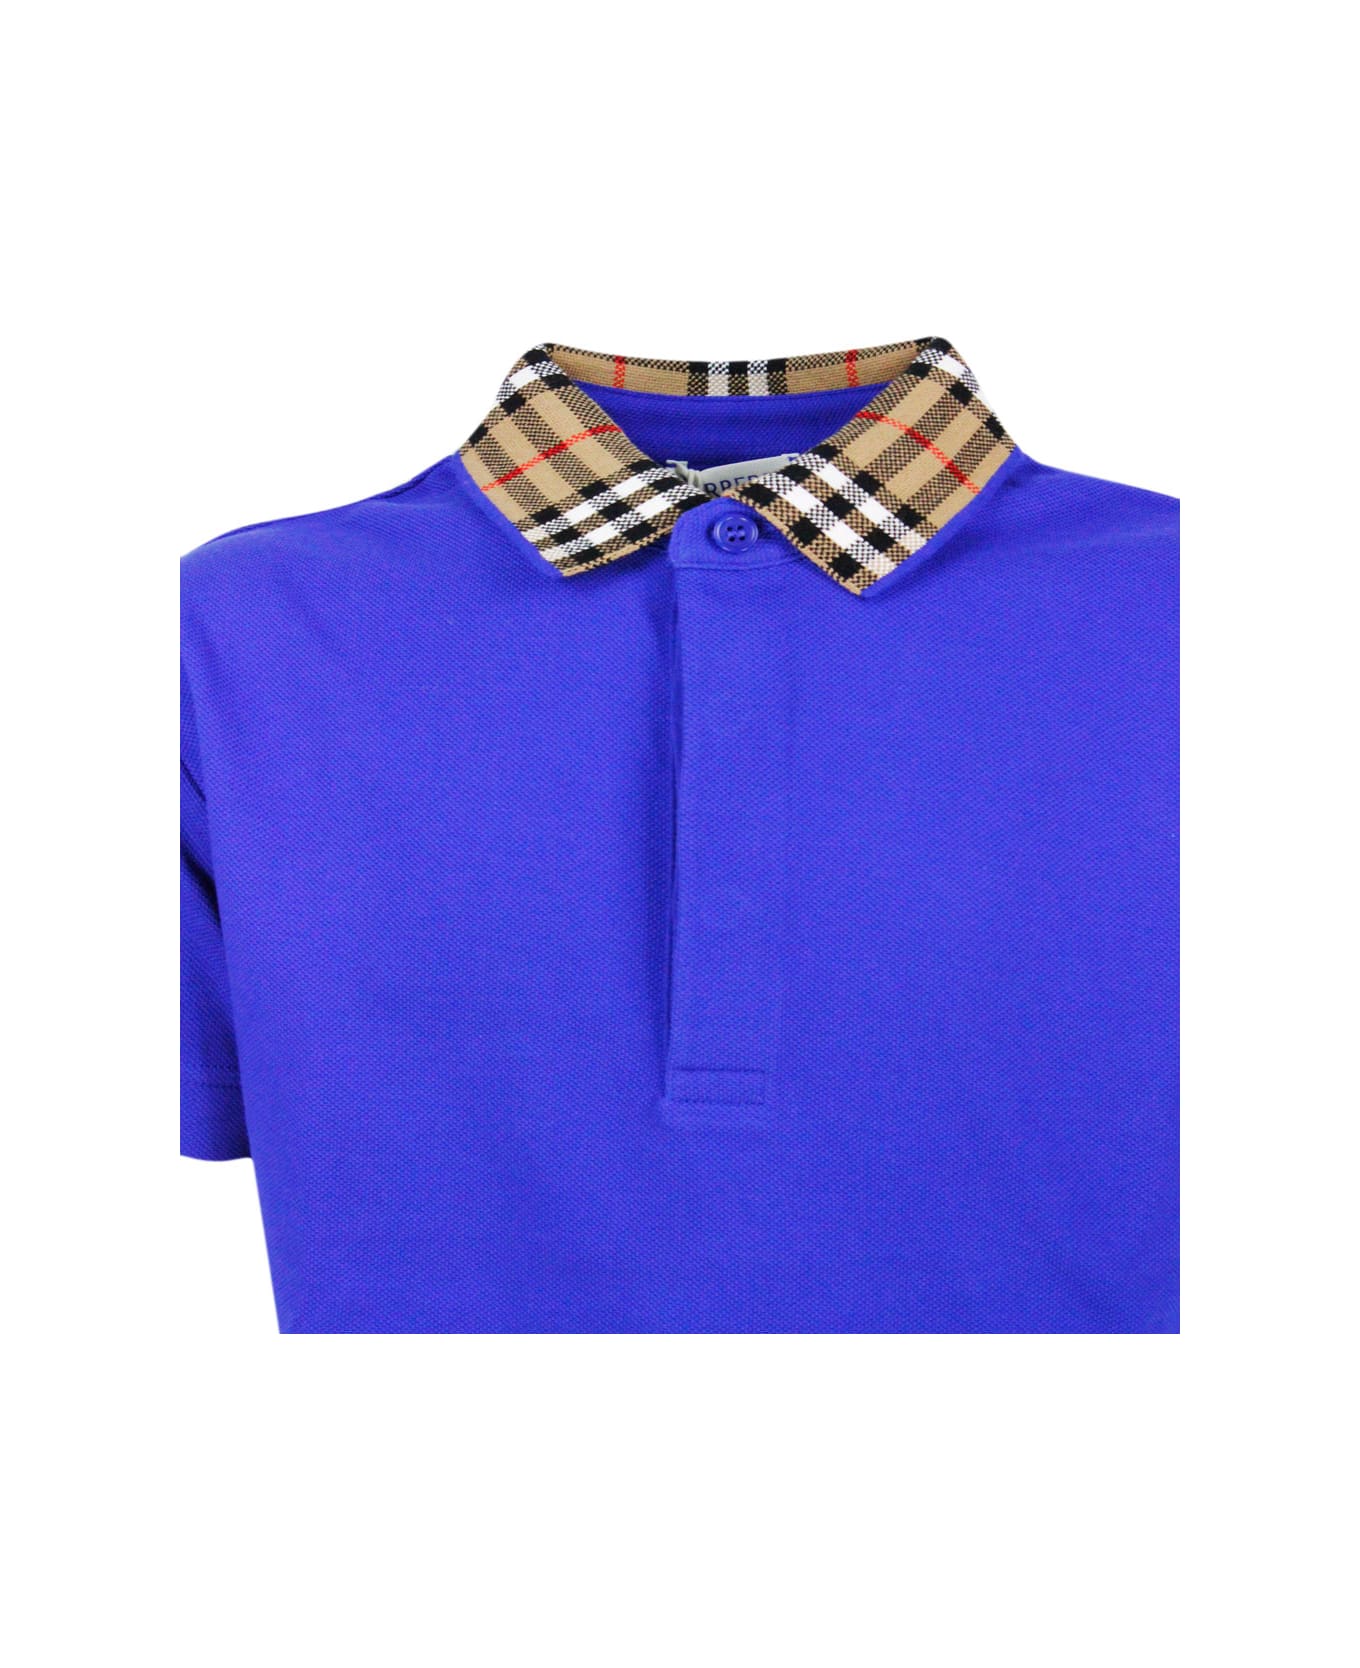 Burberry Piqué Cotton Polo Shirt With Check Collar And Button Closure - Blu royal